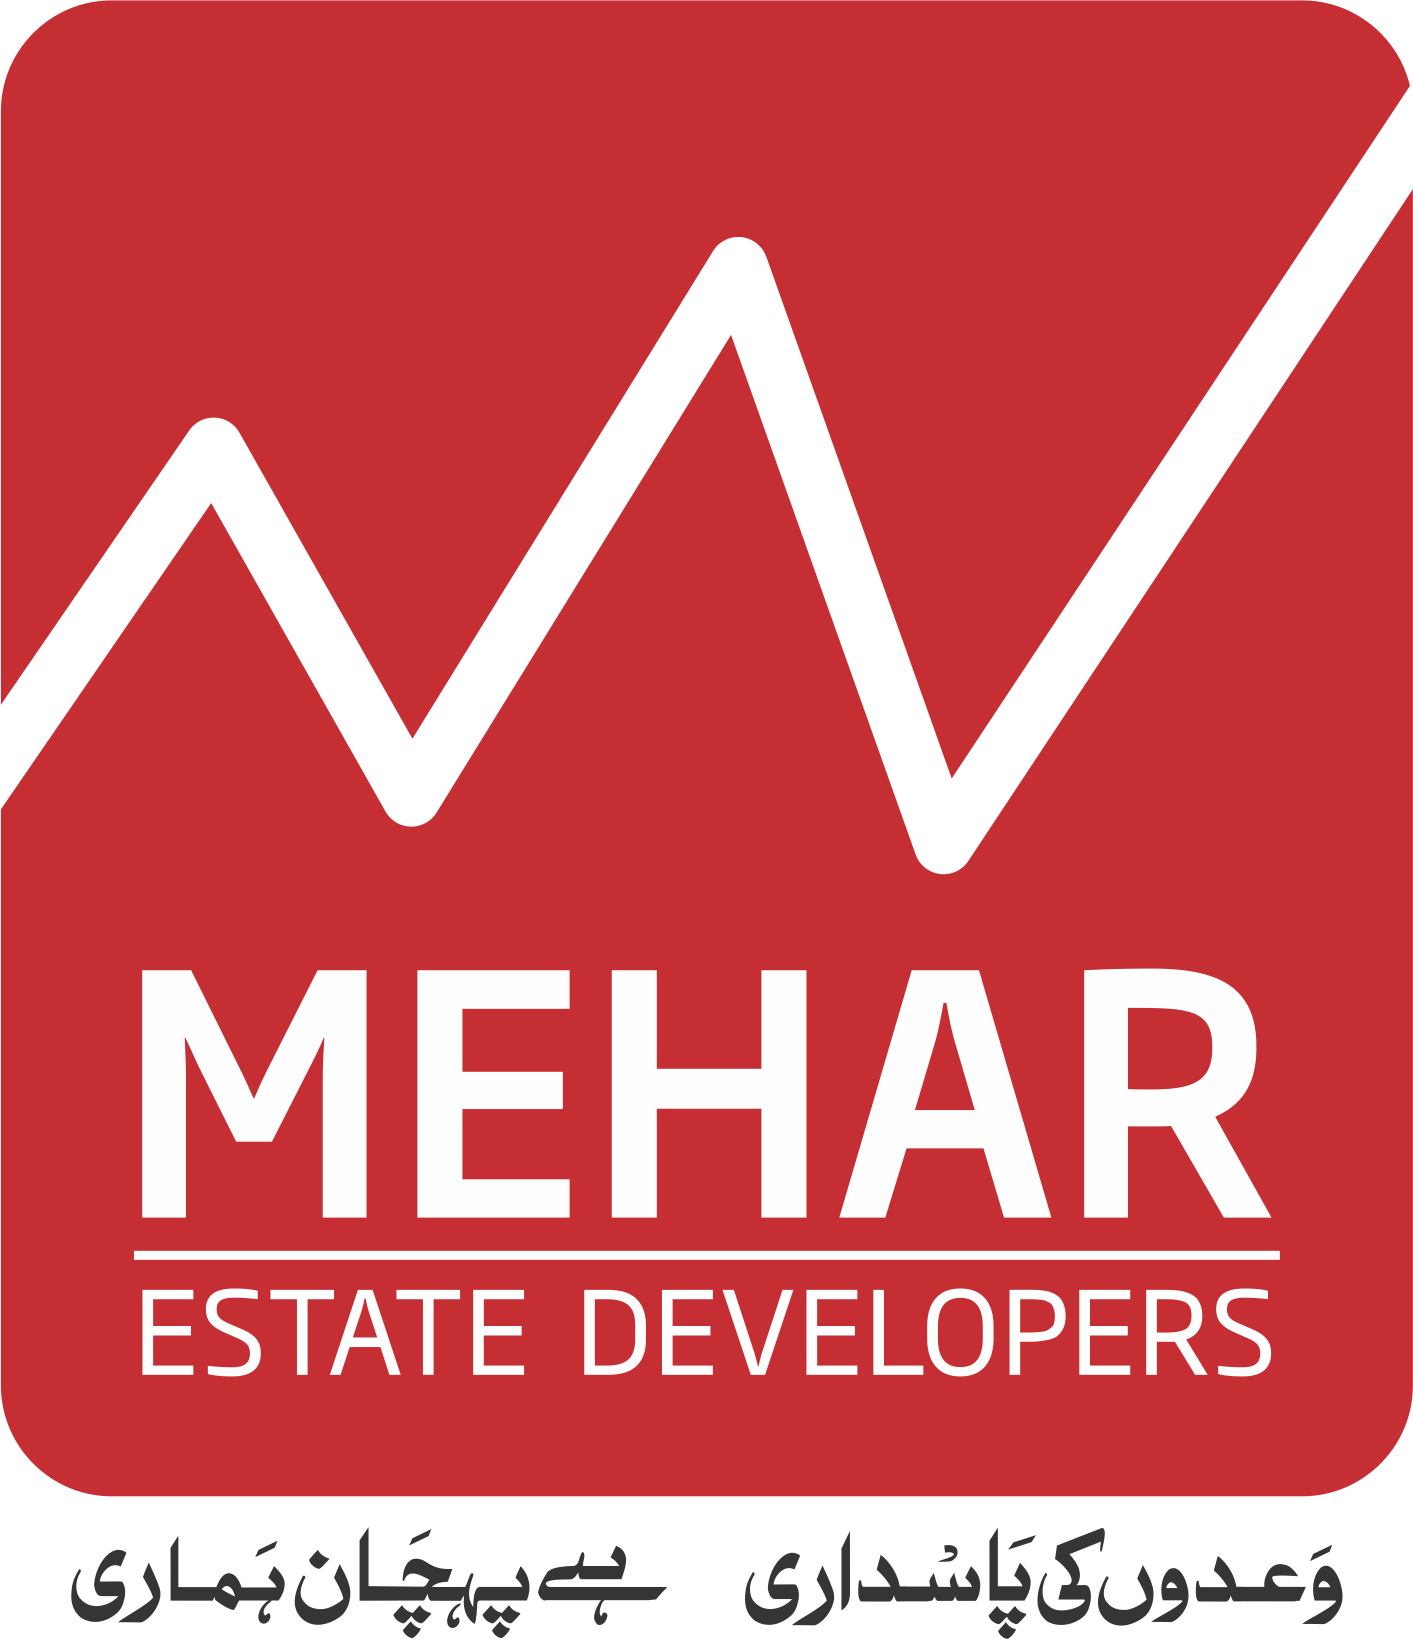 Mehar Estate Developers